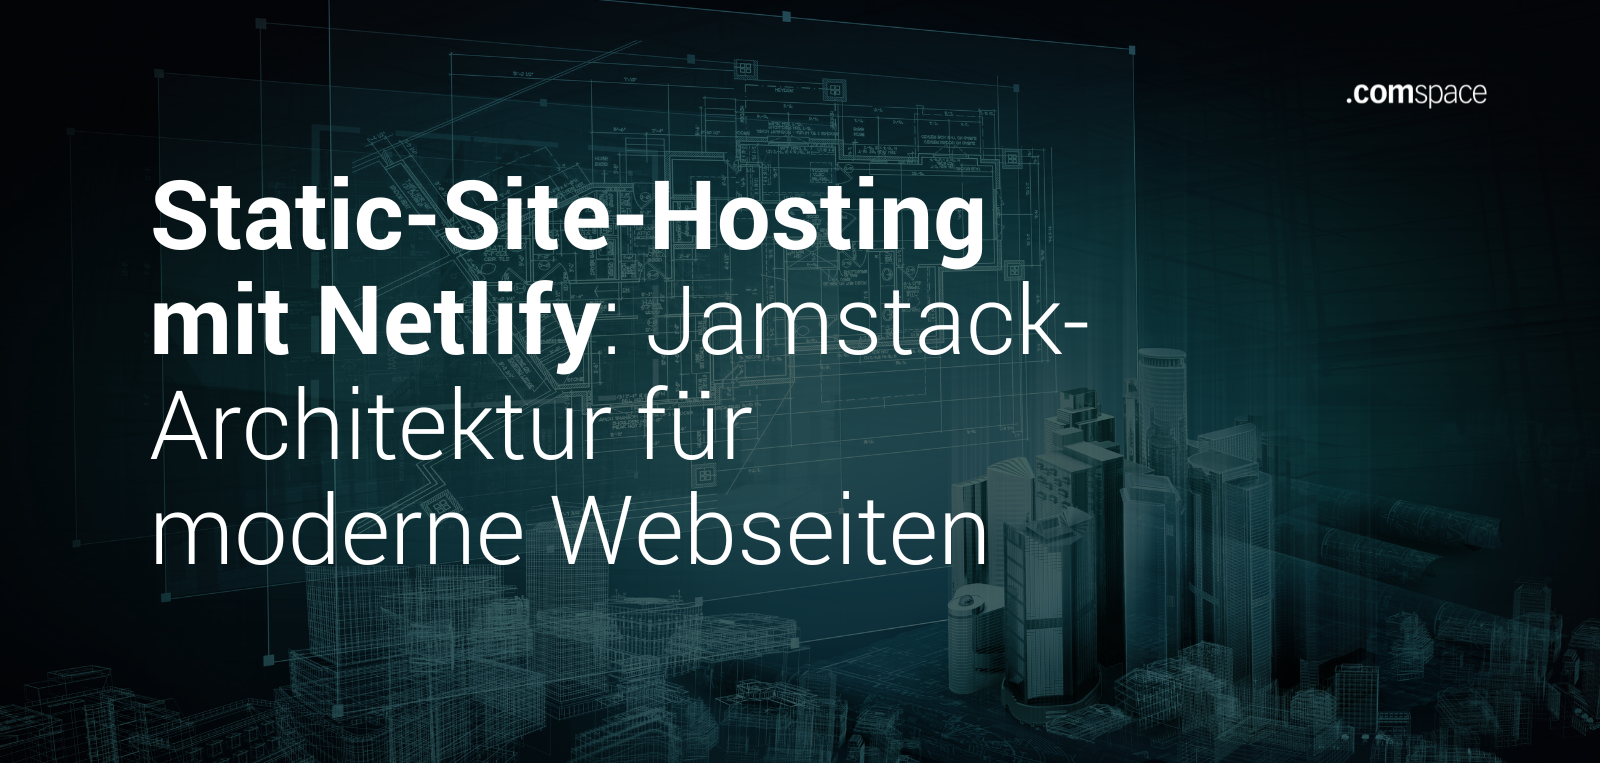 Static-Site-Hosting mit Netlify